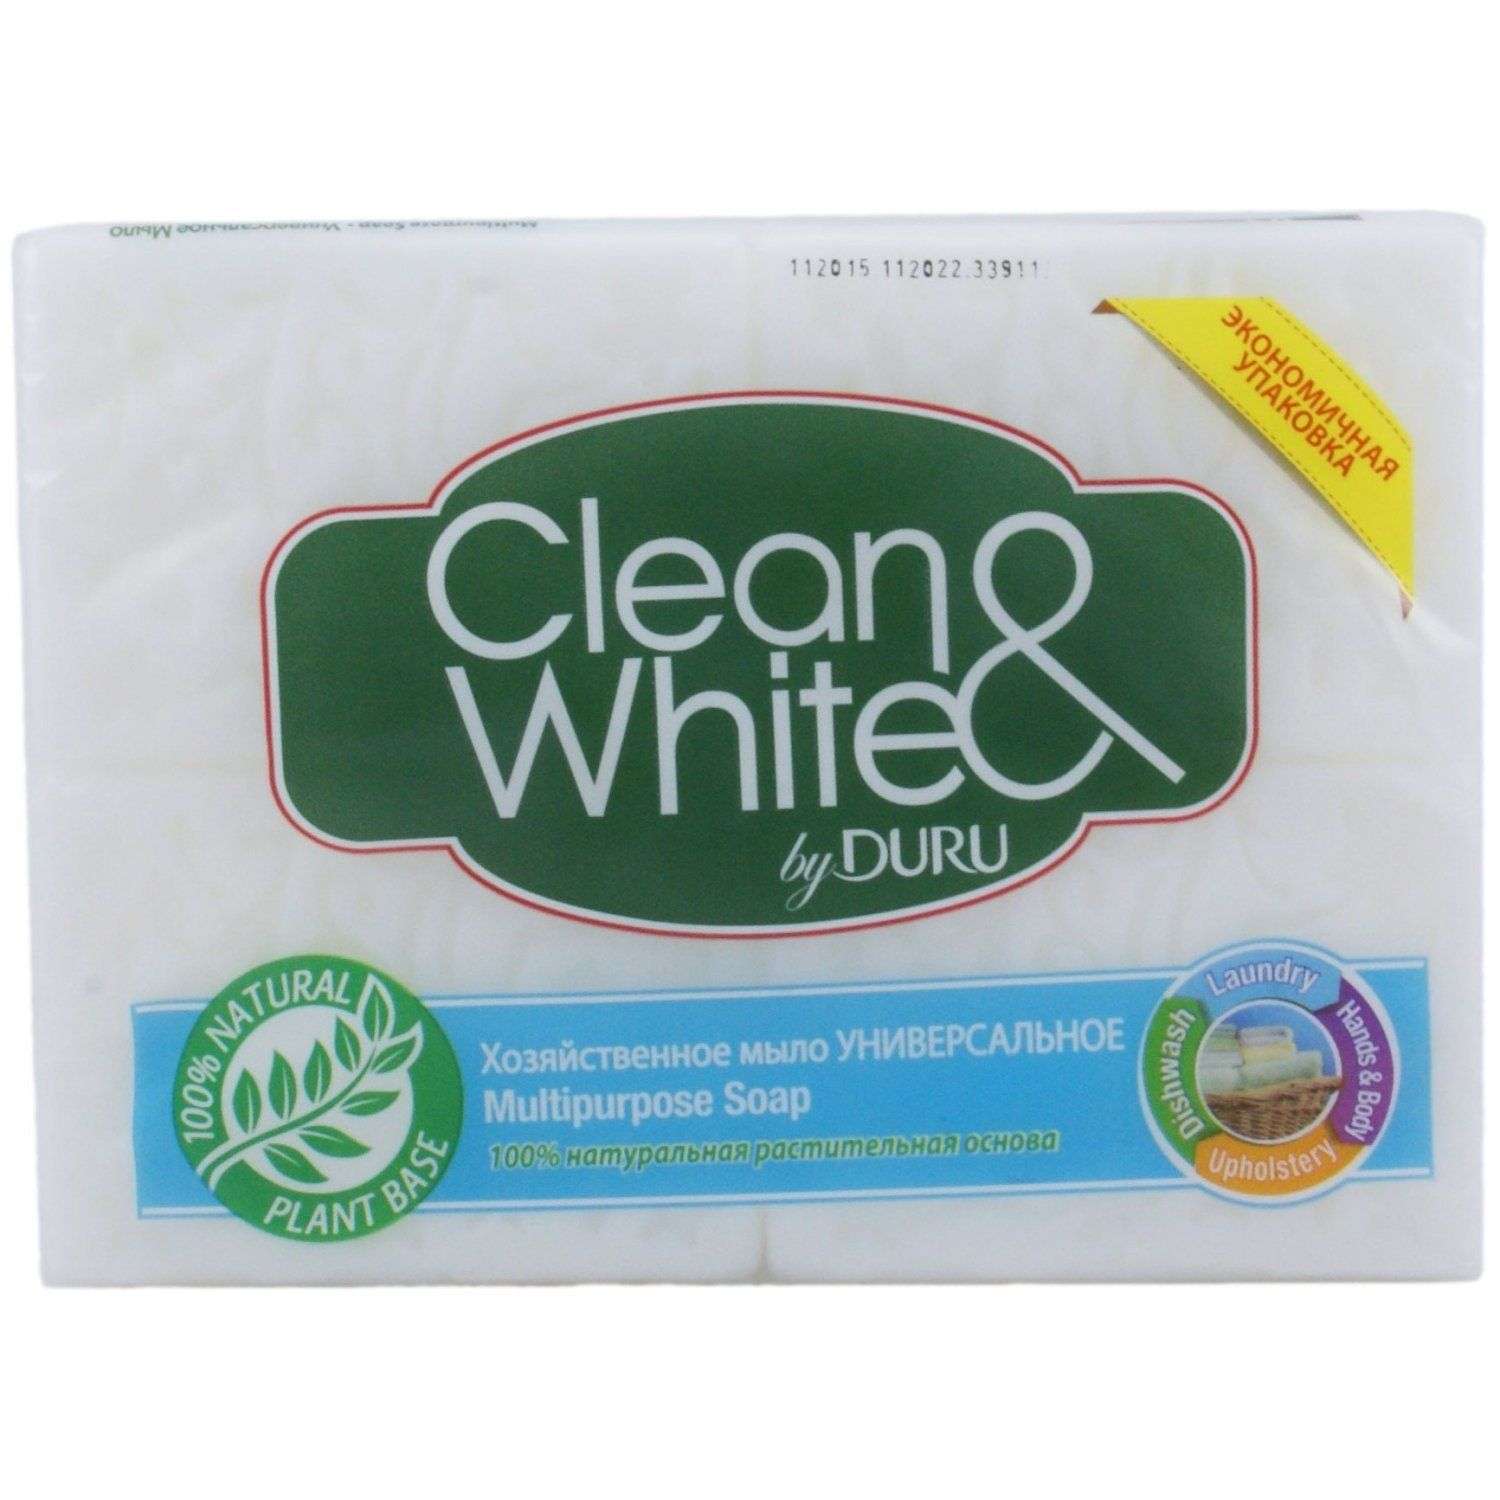 Мыло DURU Clean and White Хозяйственное Универсальное 125г - фото 1